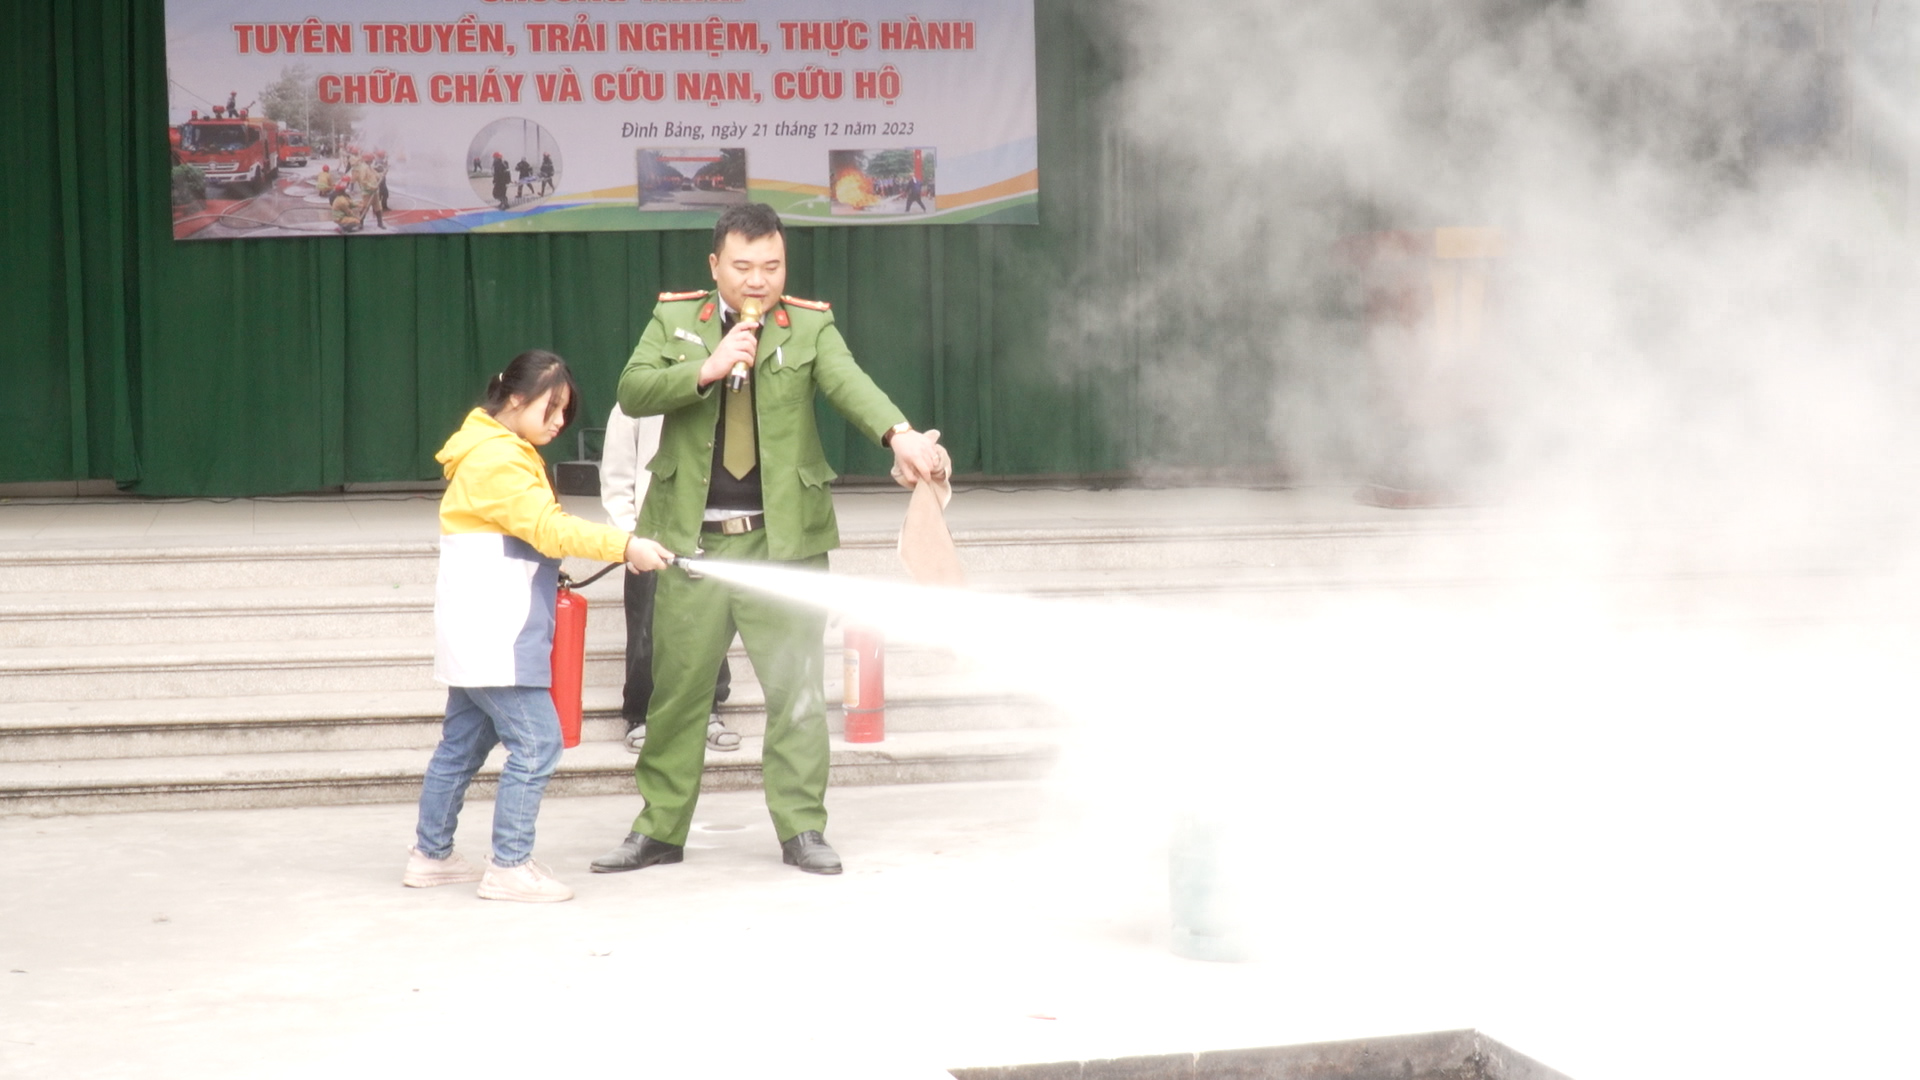 Trường Tiểu học Đình Bảng 2 tuyên truyền, trải nghiệm thực hành chữa cháy và CNCH